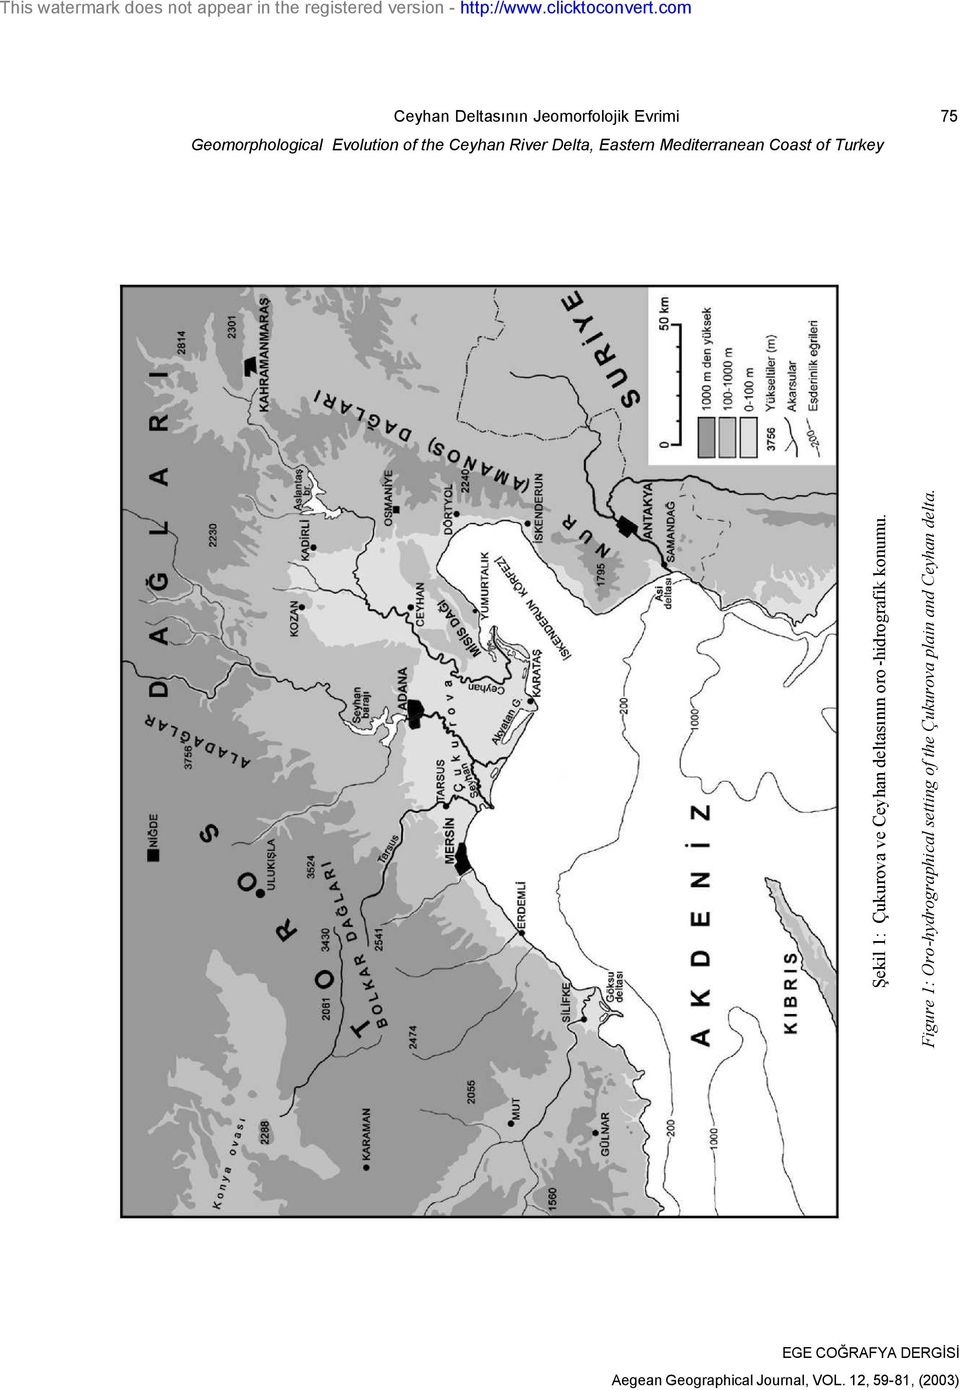 Şekil 1: Çukurova ve Ceyhan deltasının oro -hidrografik konumu.